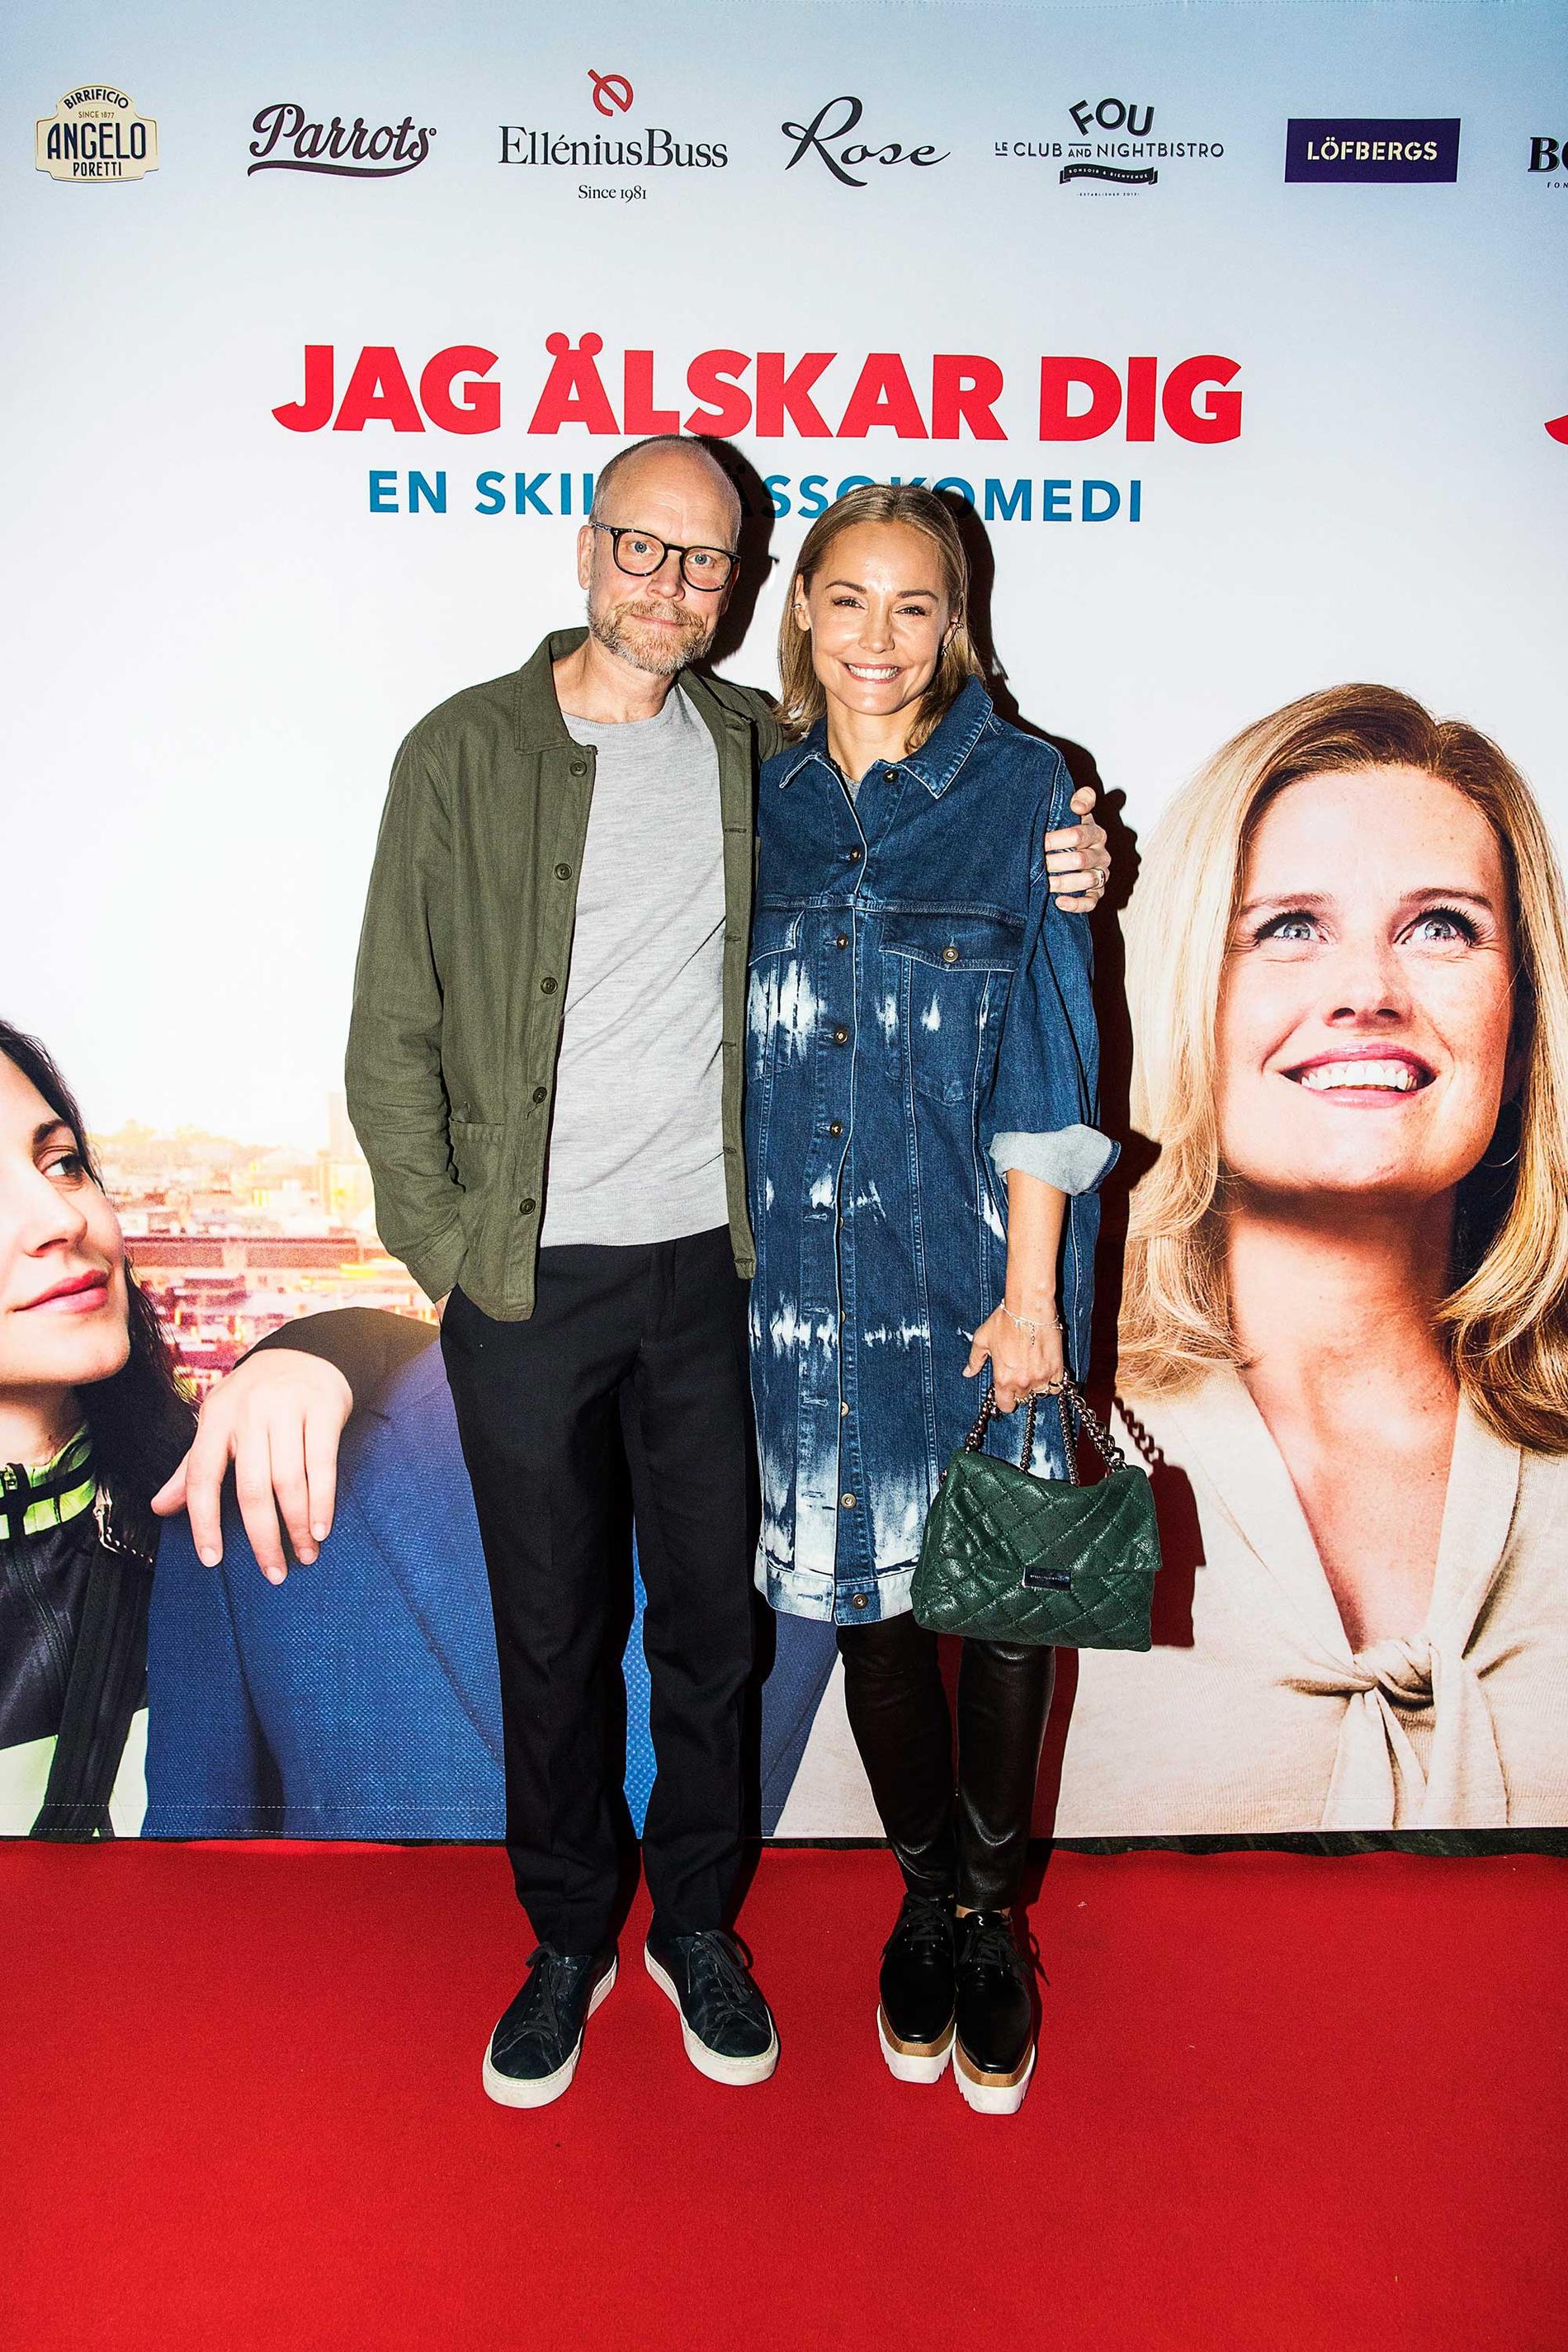 Så sent som den 26 september premiärvimlade Luuk & Berg ihop på biograf Rigoletto i Stockholm. Filmen: ”Jag älskar dig – en skilsmässokomedi”...